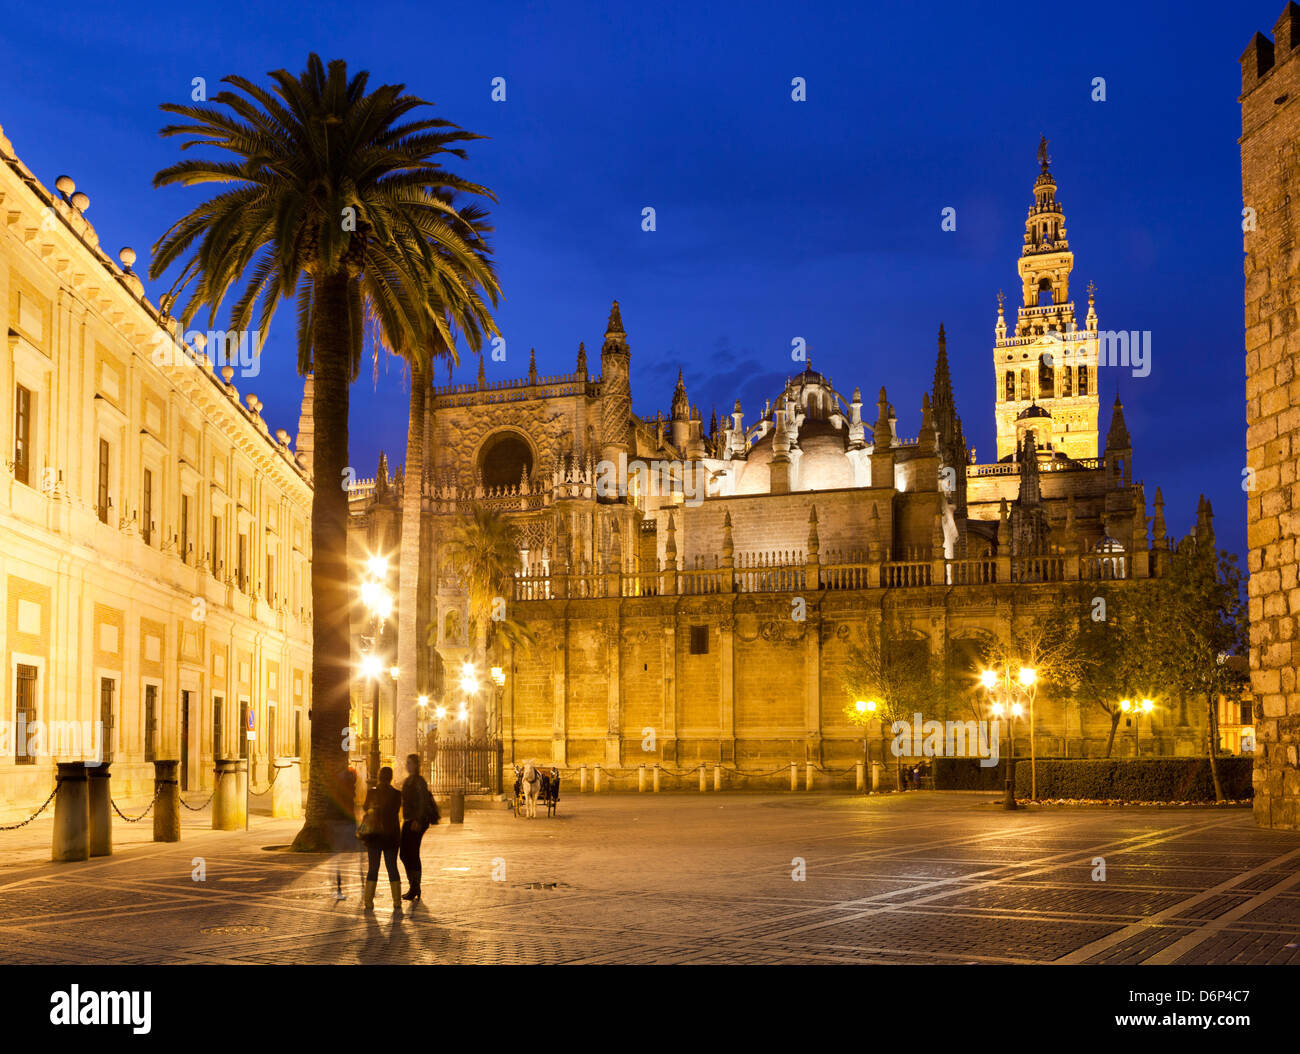 La catedral de Sevilla (Catedral) y la Giralda de noche, Sitio del Patrimonio Mundial de la UNESCO, Sevilla, Andalucía, España, Europa Foto de stock